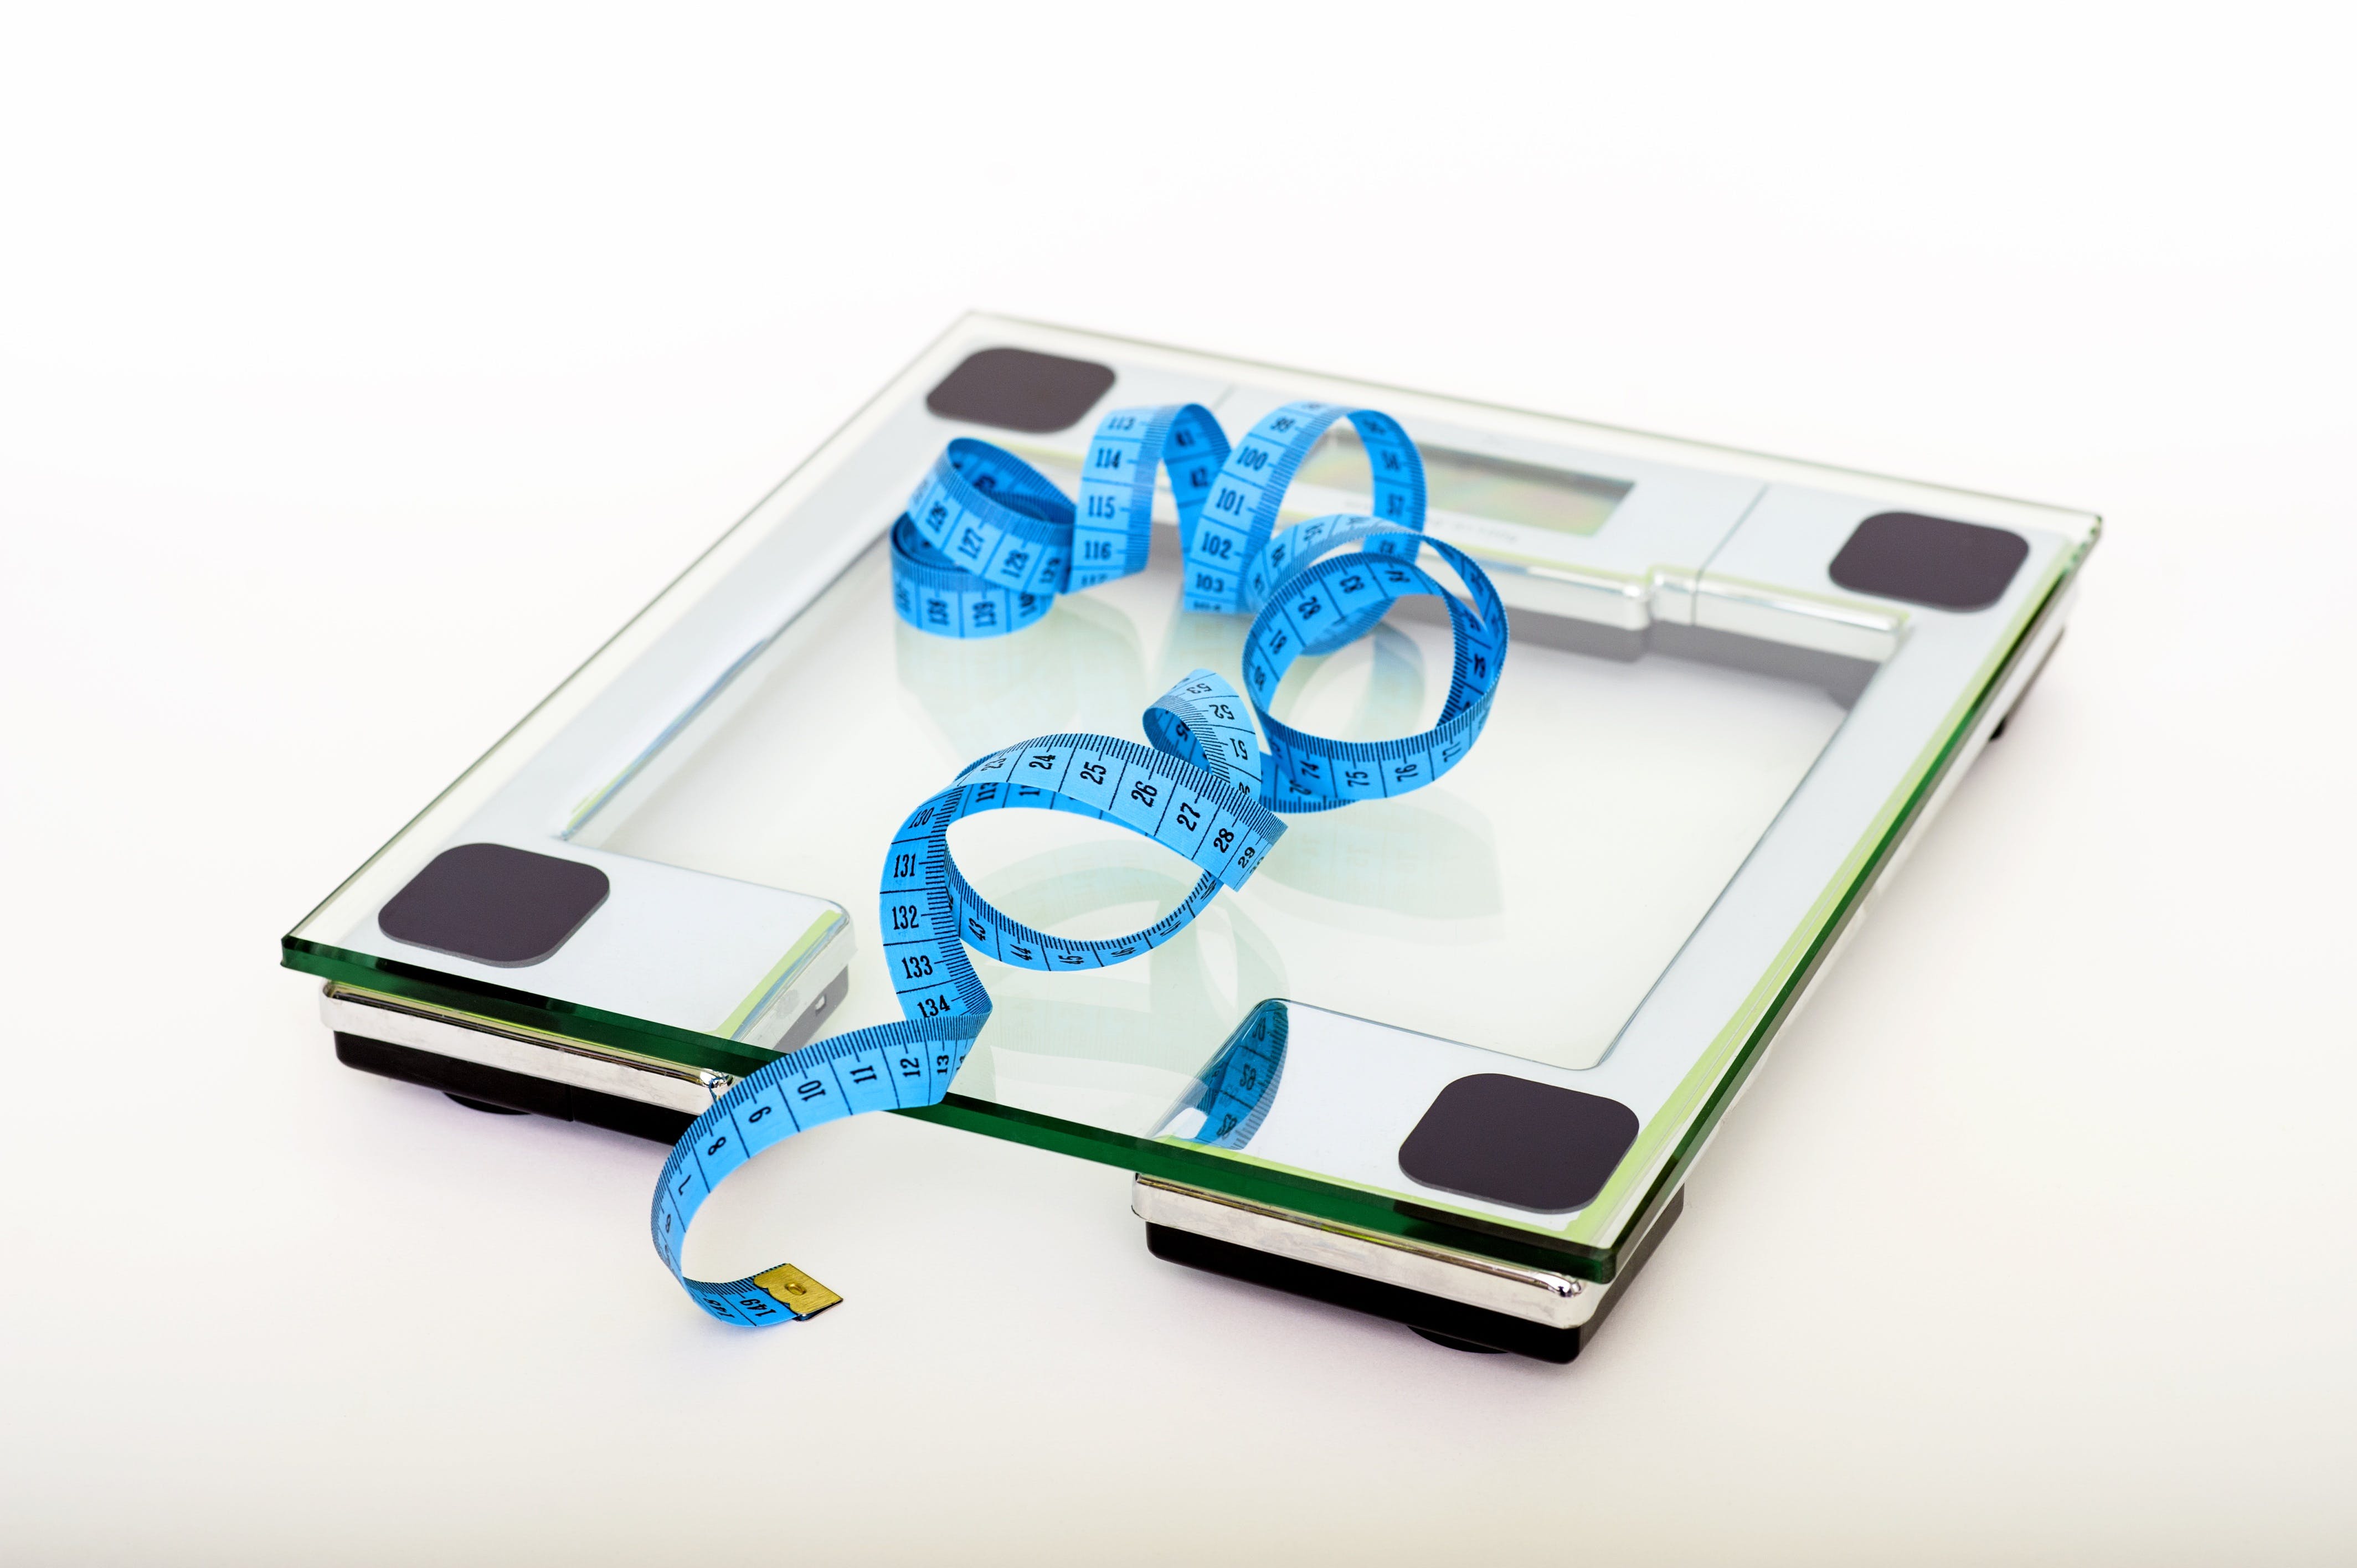 Obesità infantile e sovrappeso: cos’è, cause e rimedi